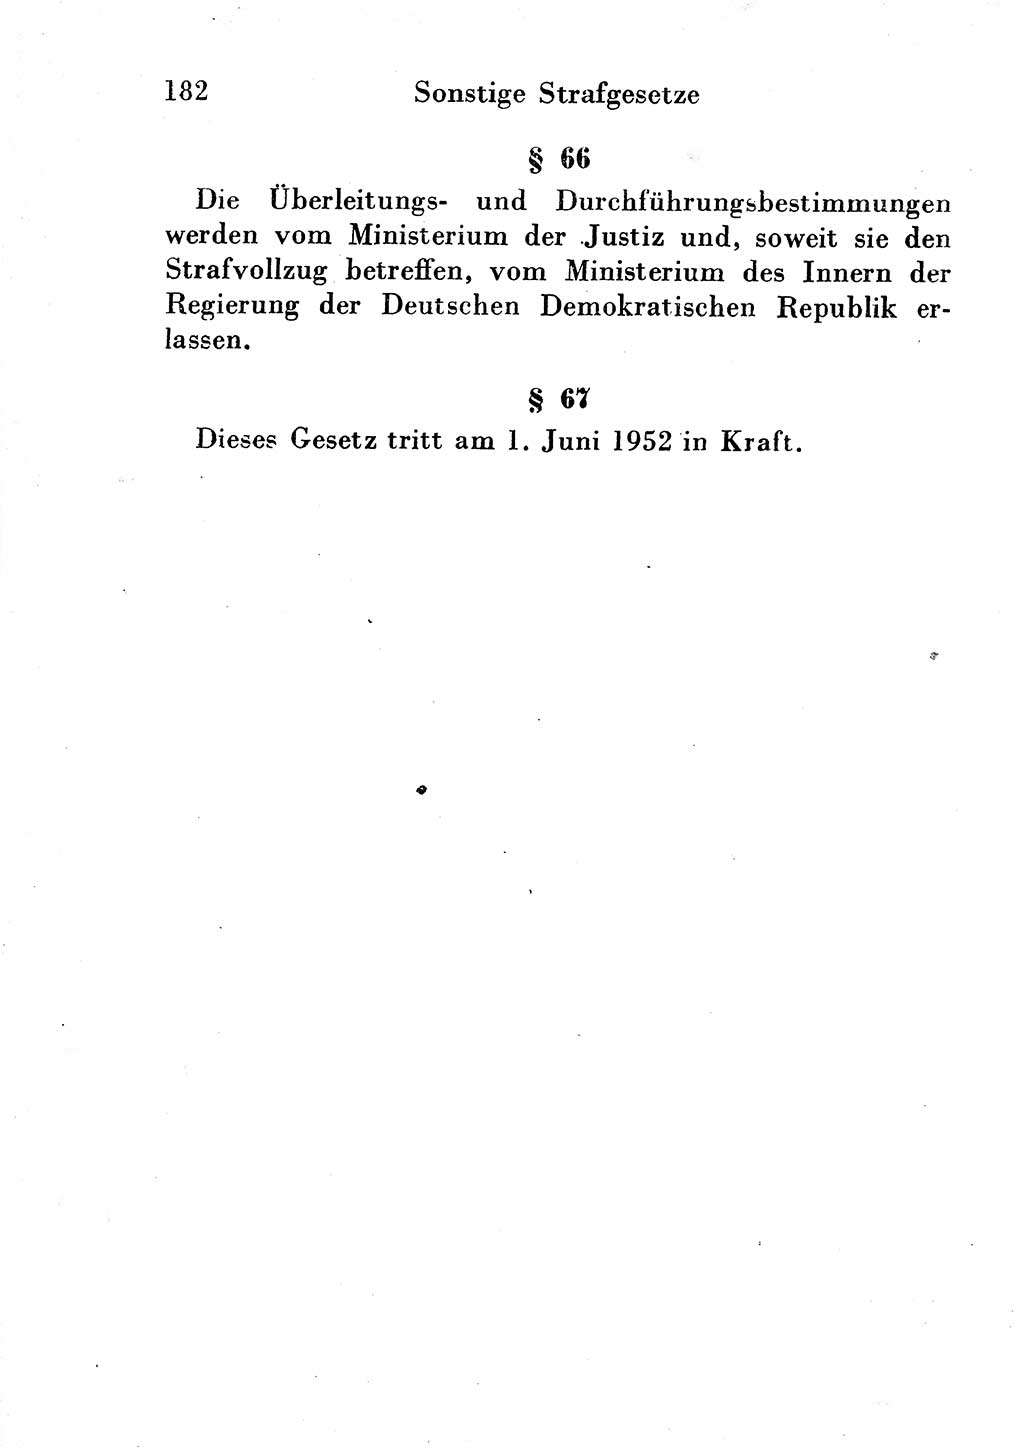 Strafgesetzbuch (StGB) und andere Strafgesetze [Deutsche Demokratische Republik (DDR)] 1954, Seite 182 (StGB Strafges. DDR 1954, S. 182)